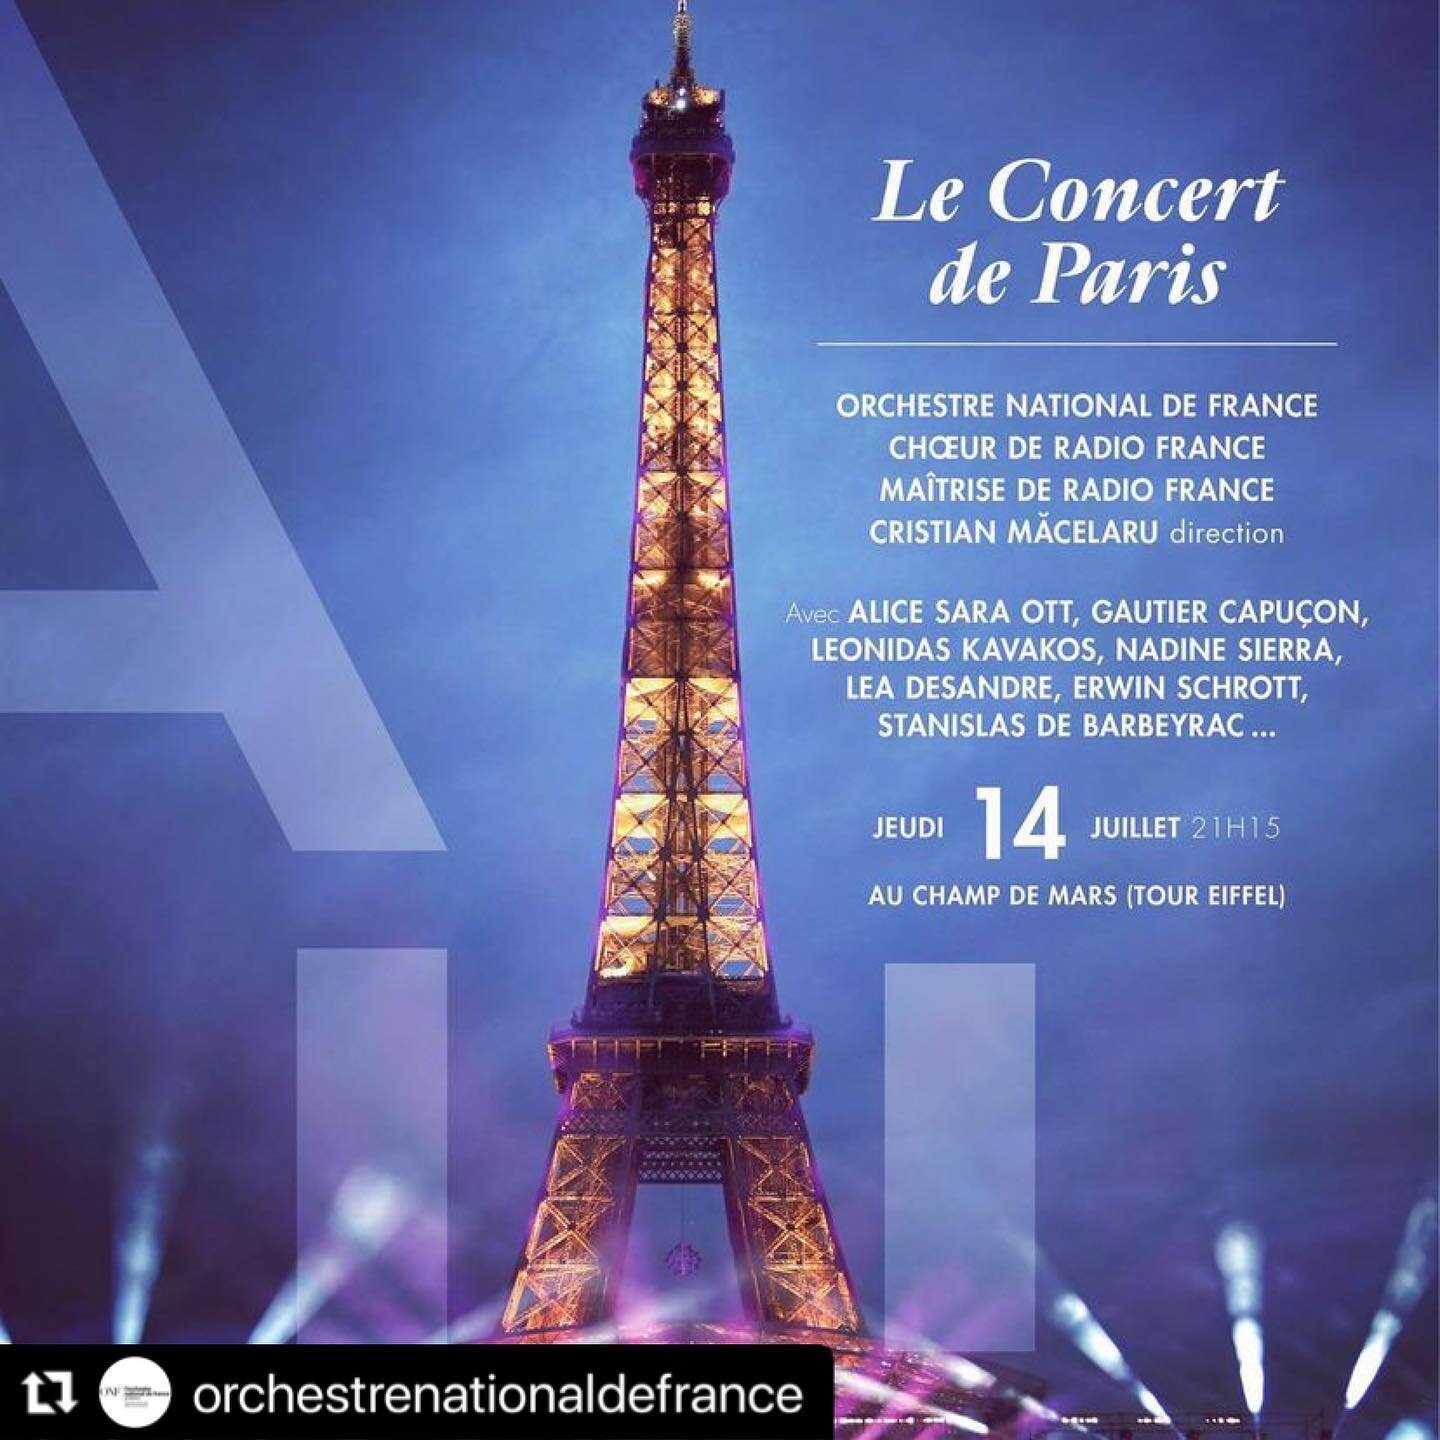 Joyeux 14 Juillet 🇫🇷🇫🇷🇫🇷 Live on TV tonight at 21:15CET on @franceinter and @france2 !  Watch @alicesaraott_official with Grieg piano concerto &hellip; 😎🎶🎵 
・・・
.
Le @concertdeparistv, c'est le grand &eacute;v&eacute;nement musical au pied d